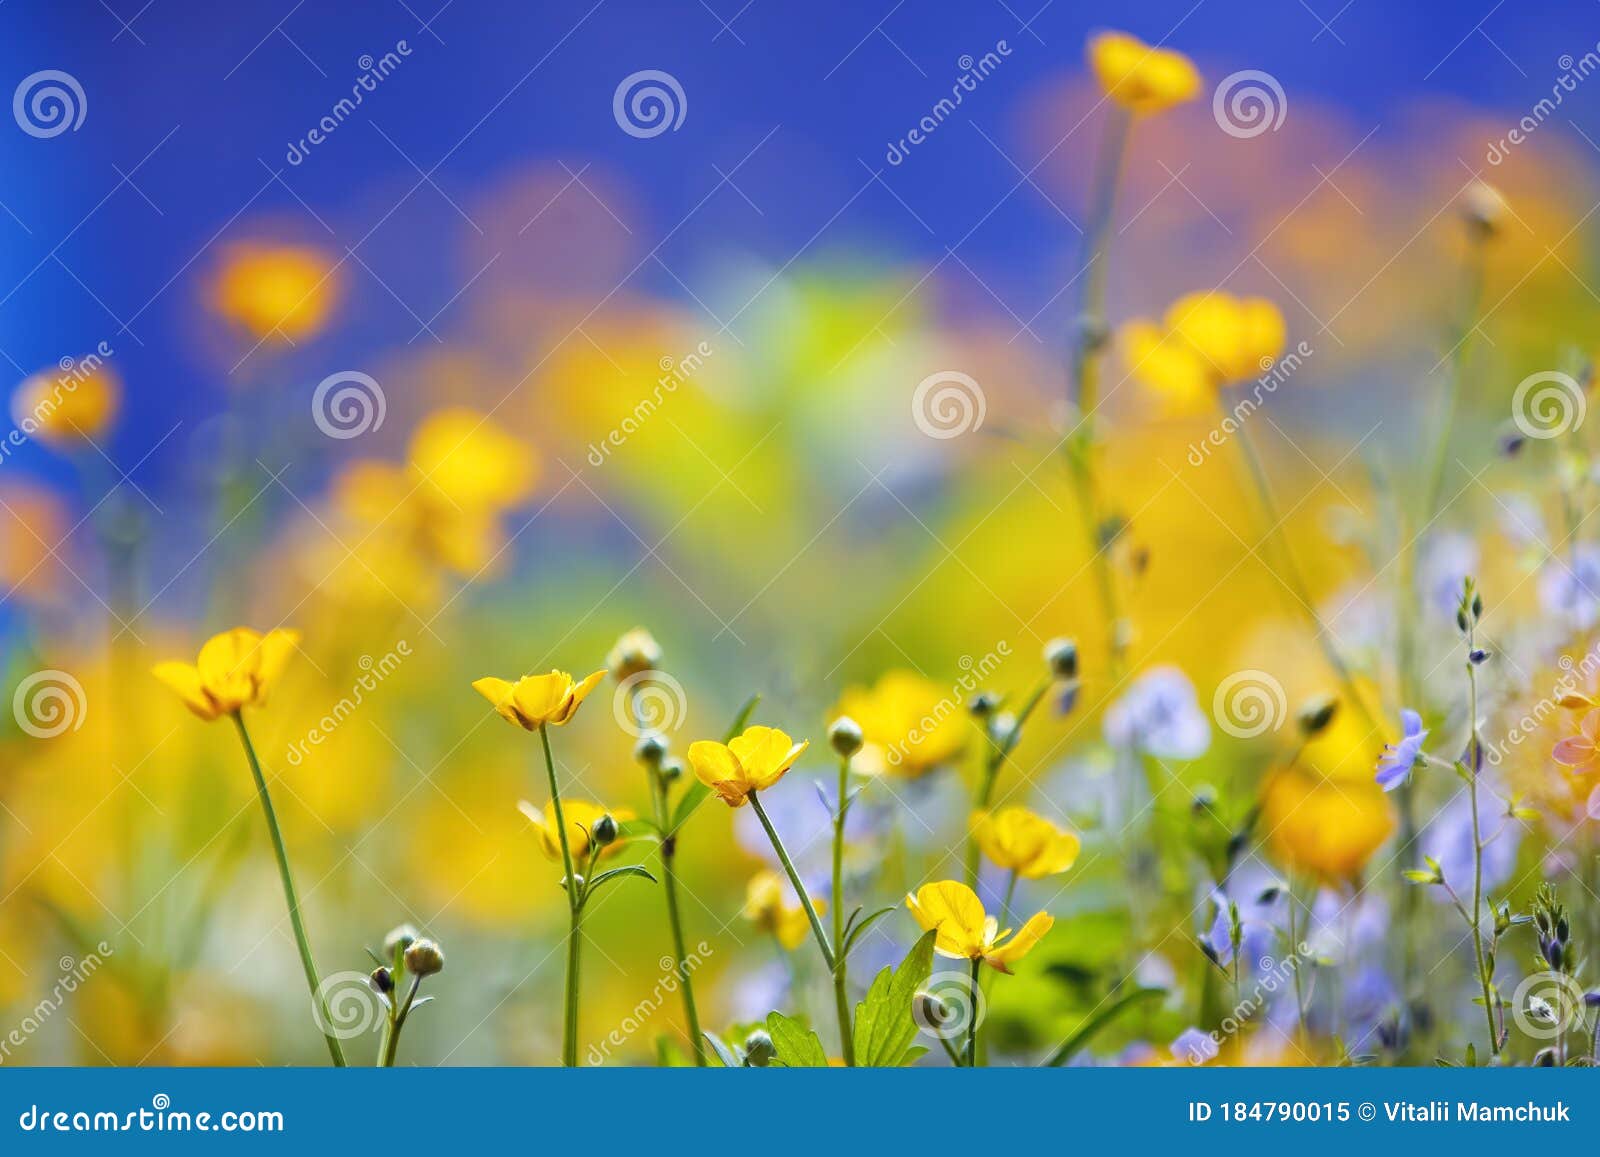 美丽蓝色背景中的春园黄色和紫色花彩色花卉桌面壁纸可用空间库存图片 图片包括有复制 字段